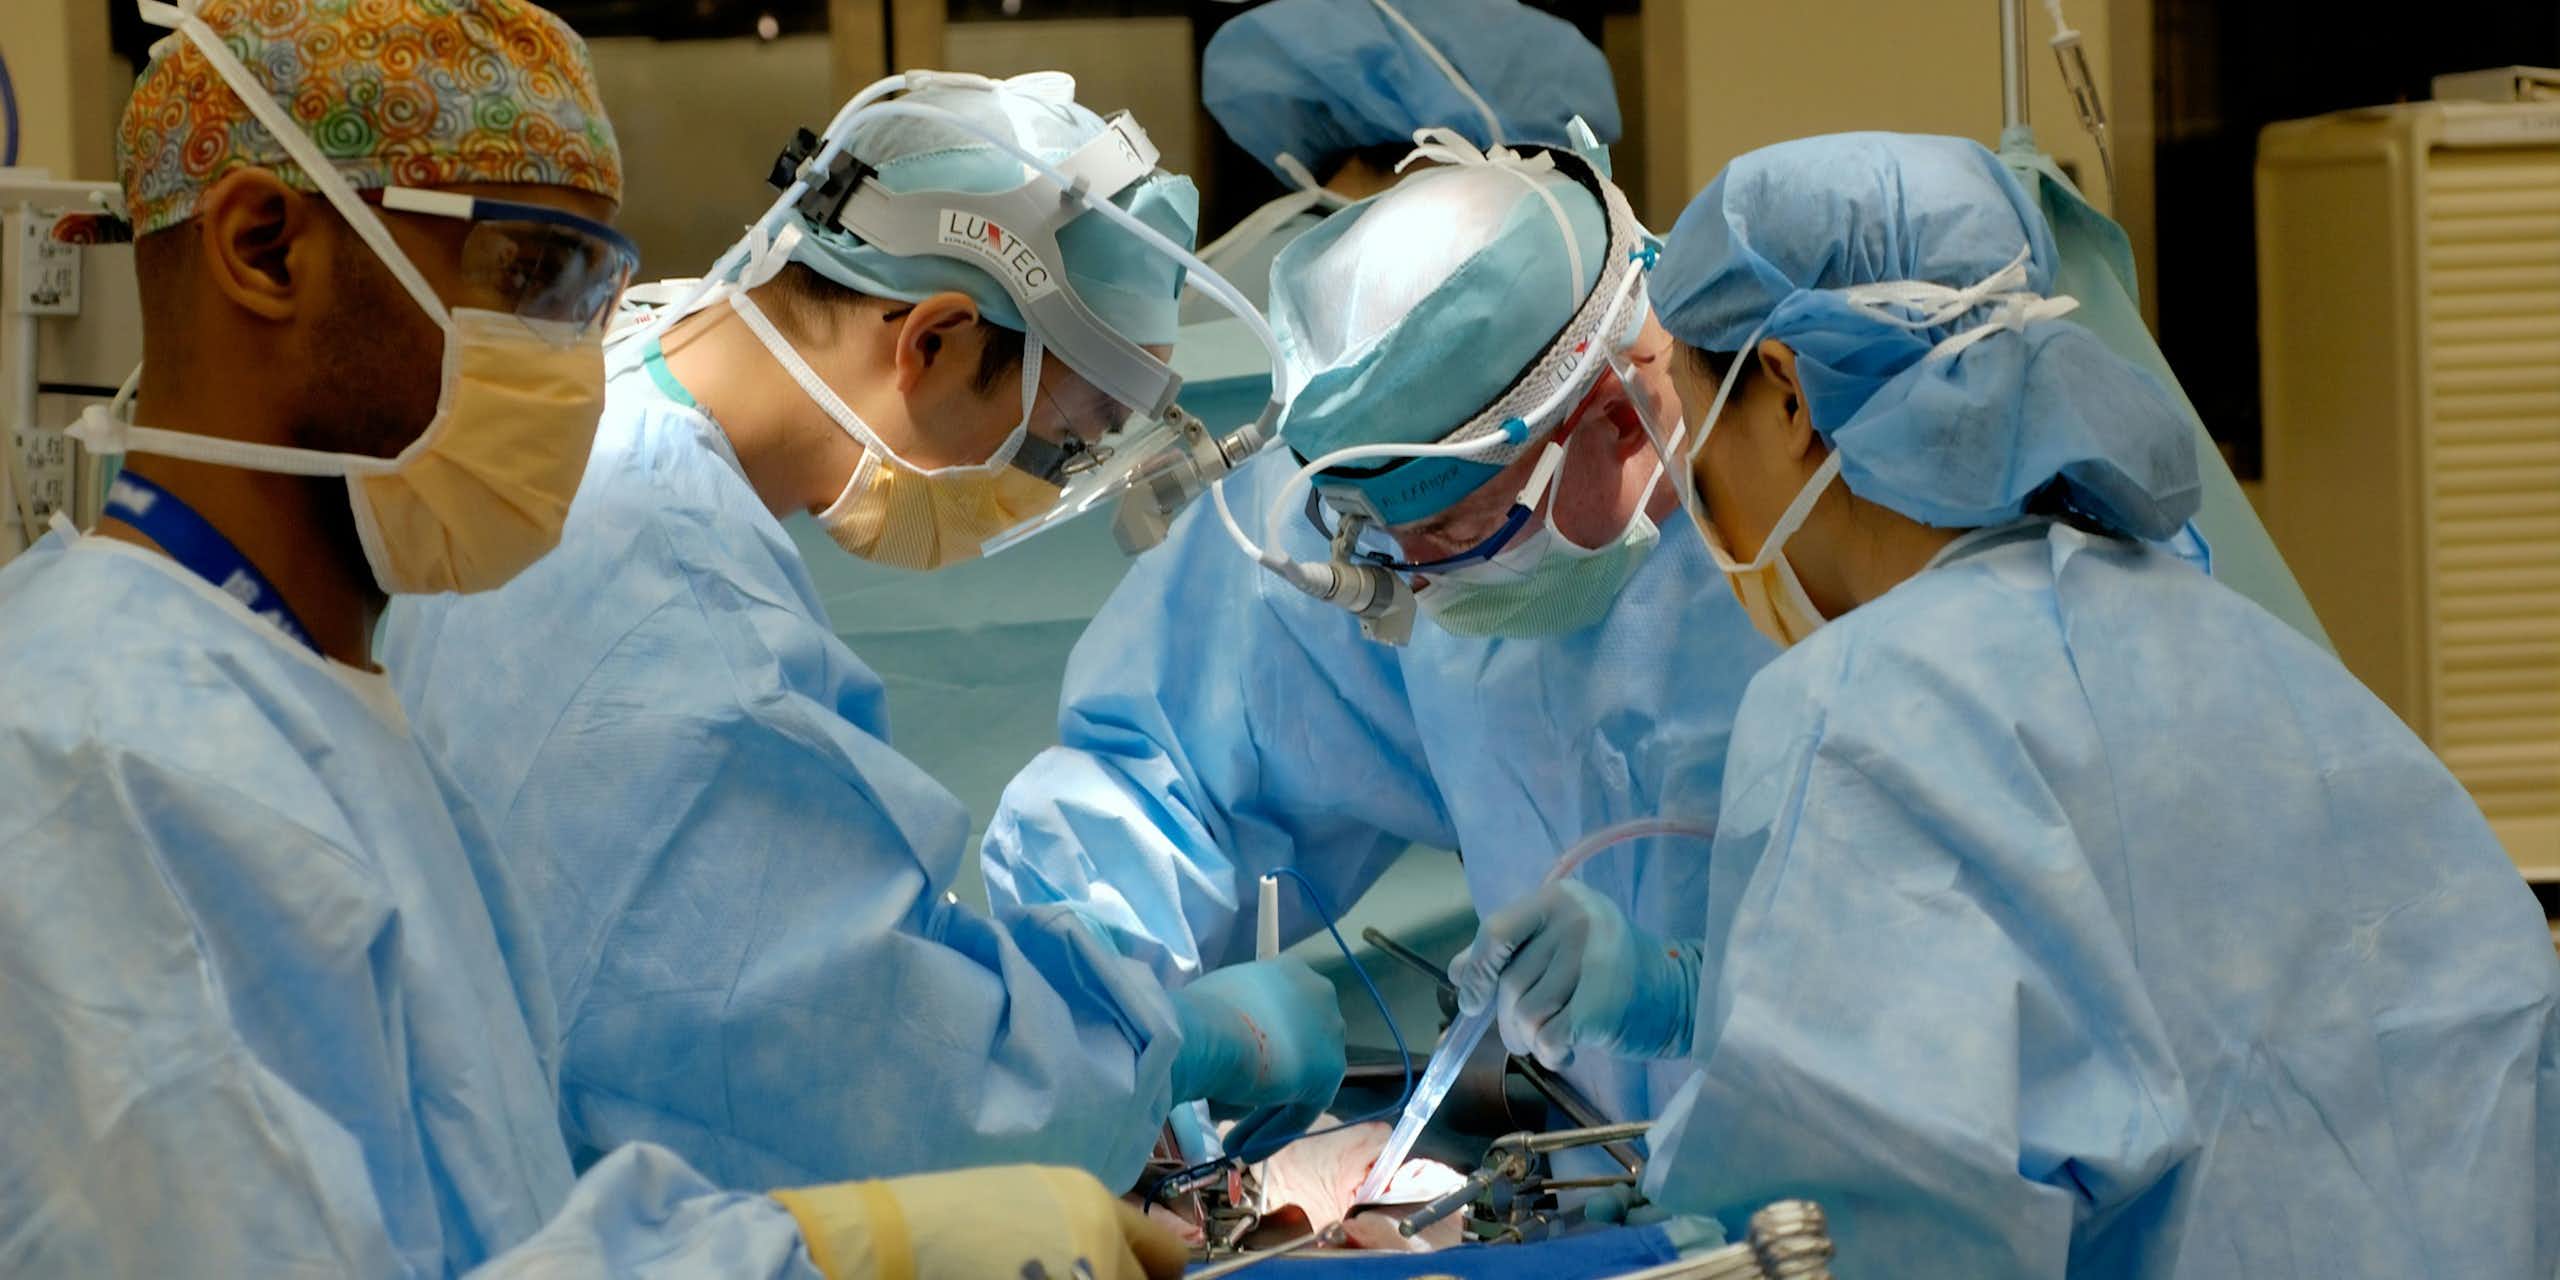 Une salle d'opération, où plusieurs professionnels de santé opèrent un patient